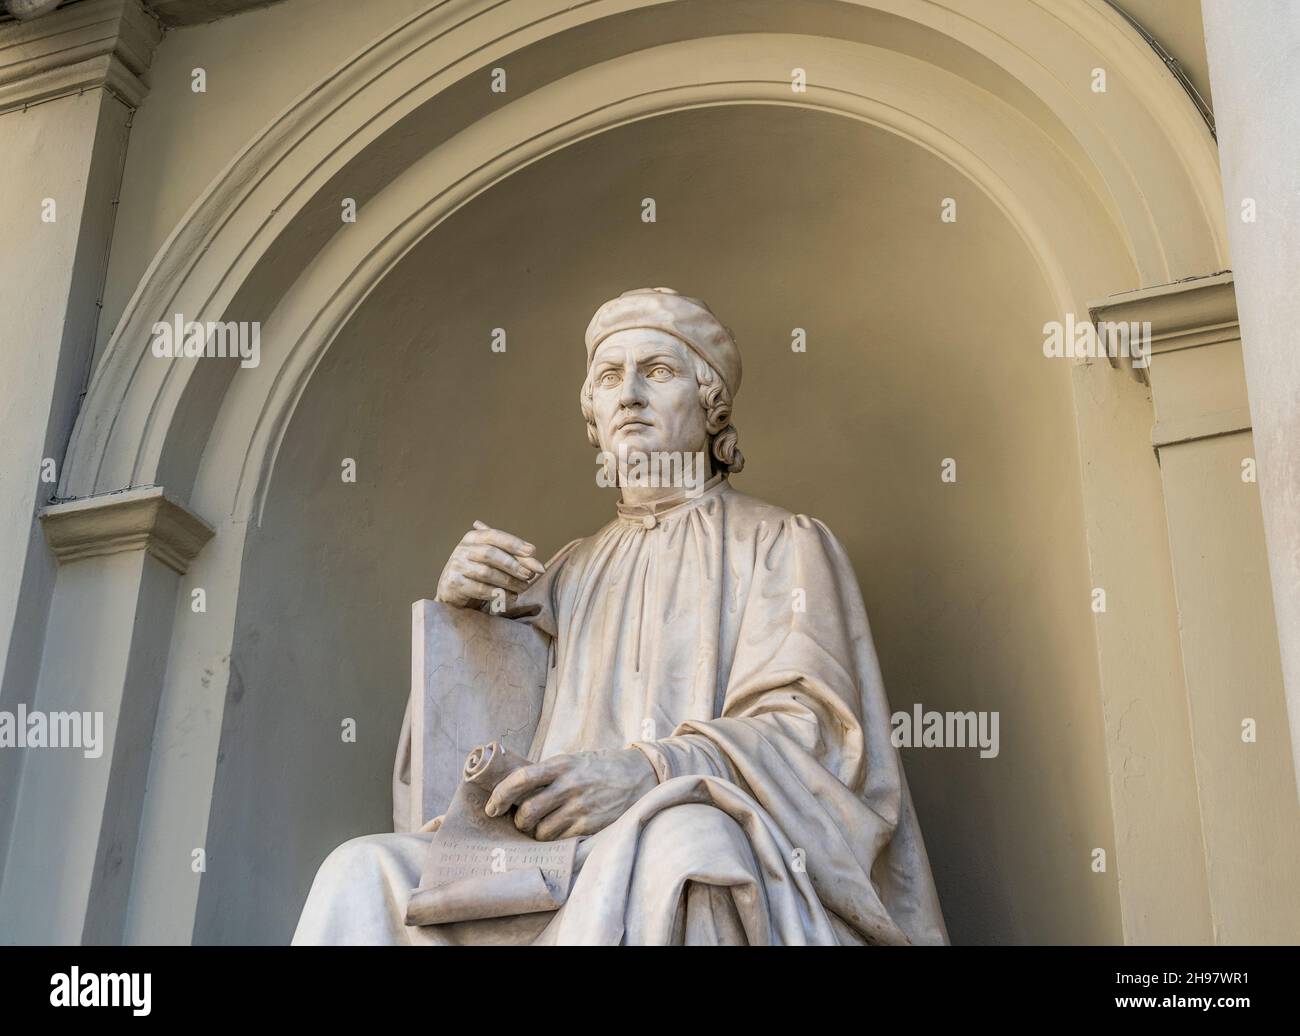 Estatua del arquitecto florentino Arnolfo di Cambio, en un nicho frente a la derecha de la Catedral de Florencia, centro de la ciudad de Florencia, Toscana, Italia Foto de stock